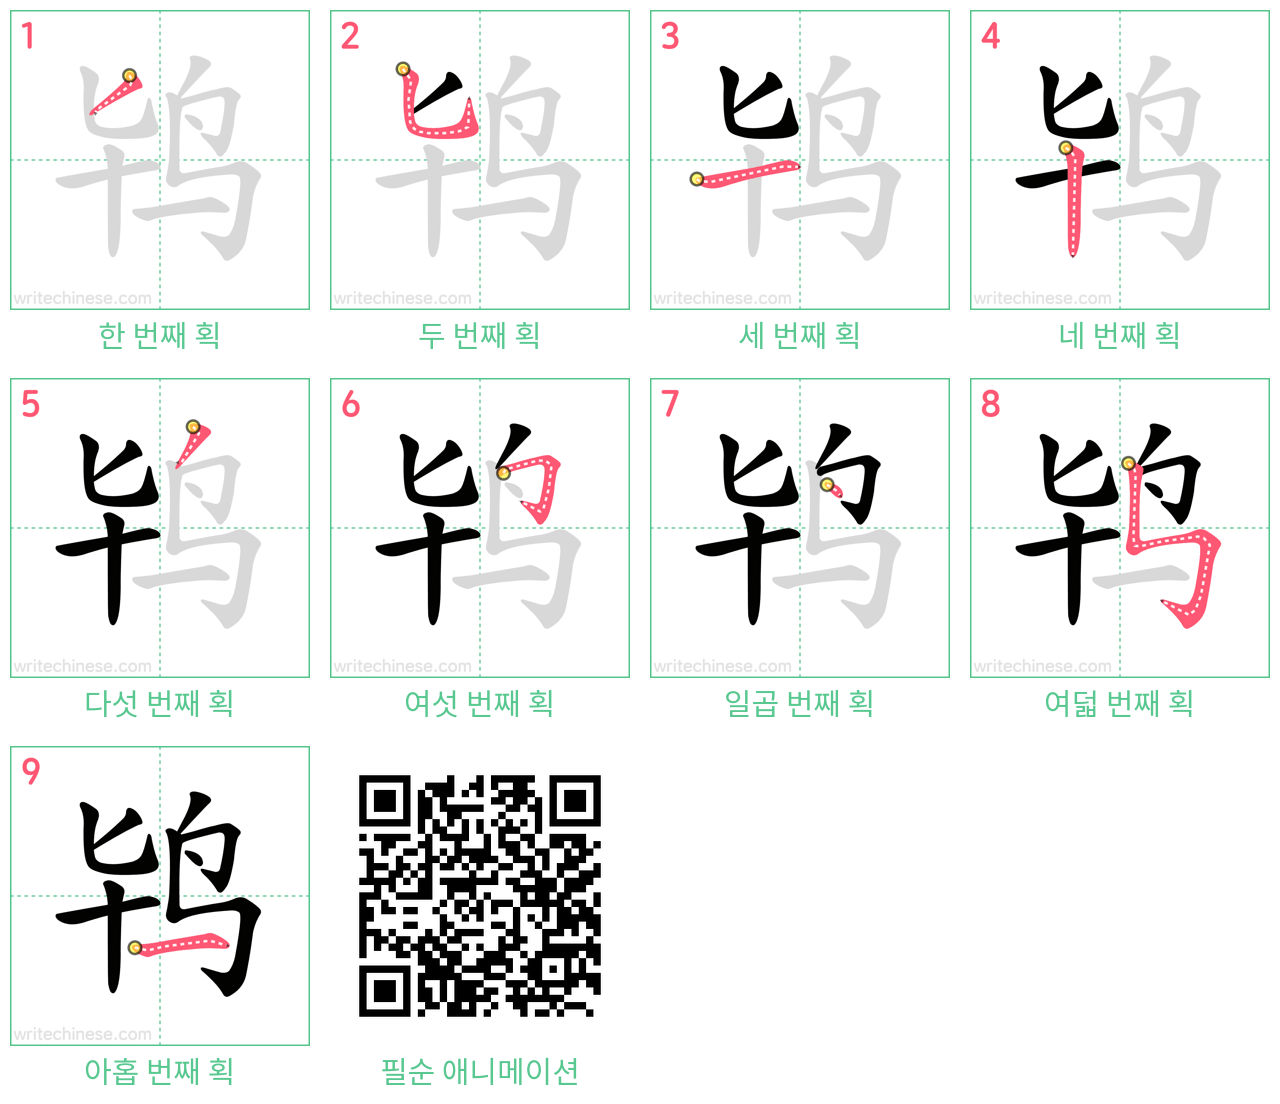 鸨 step-by-step stroke order diagrams